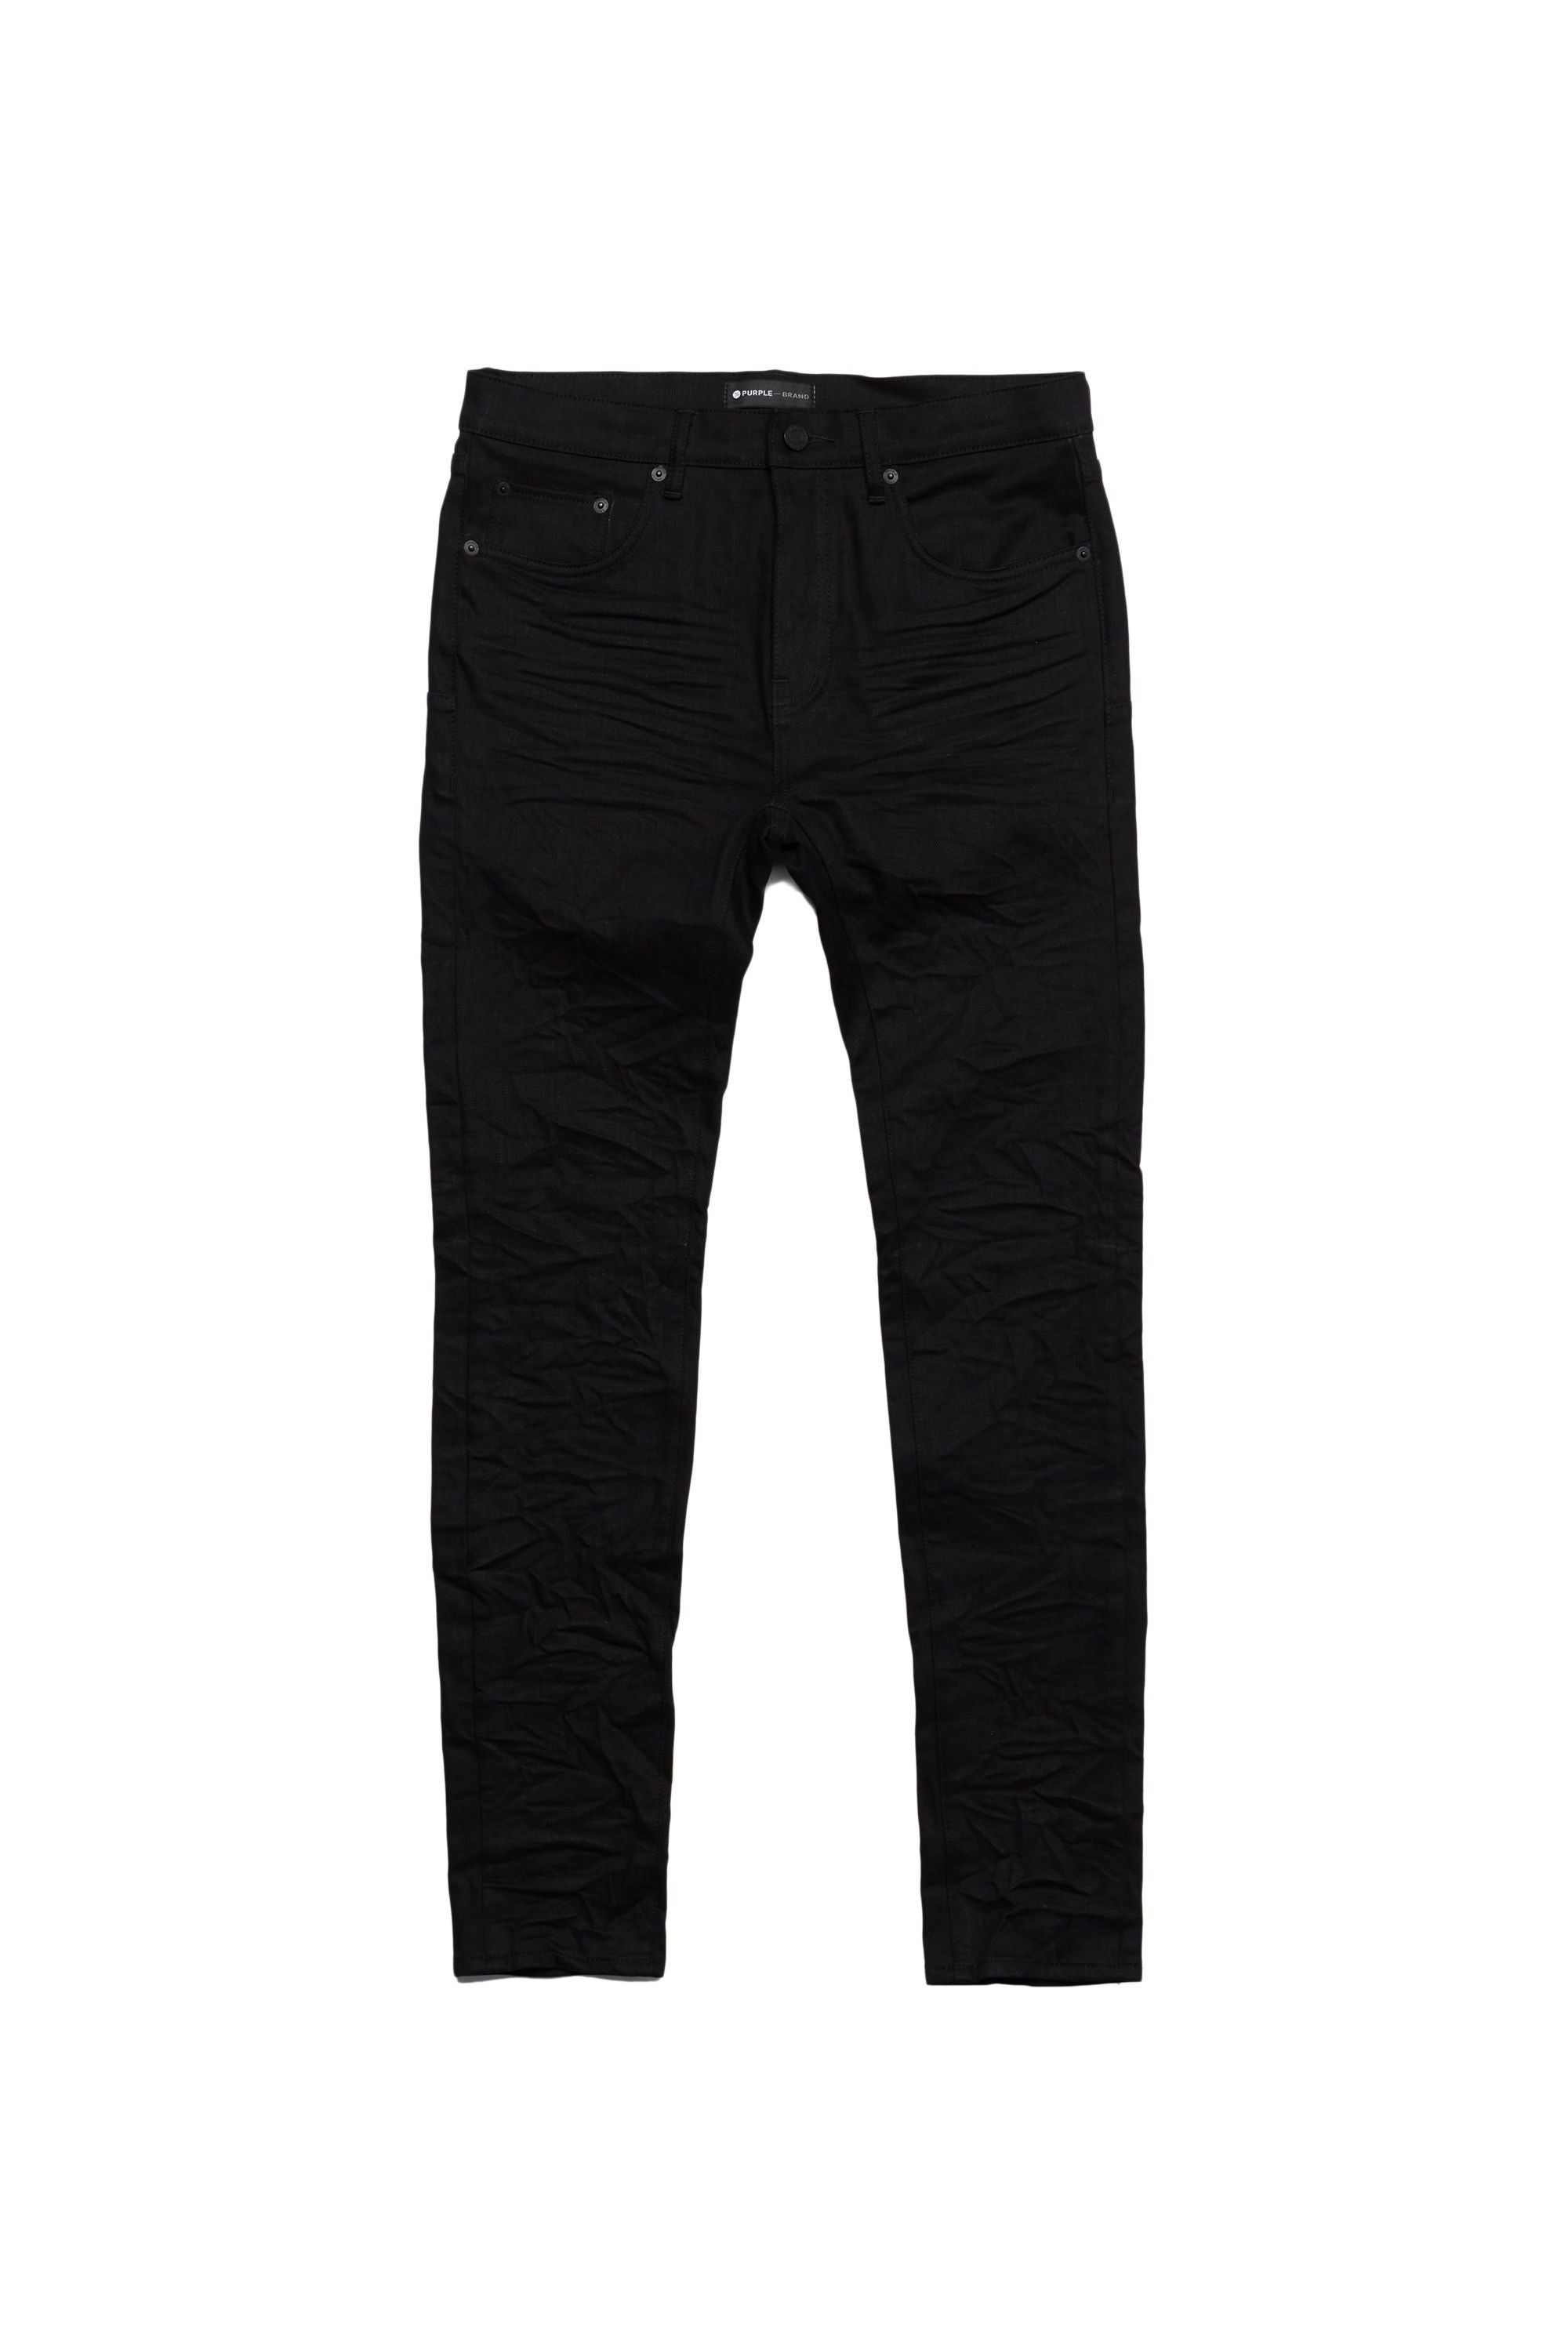 Purple Brand Men's Jeans Classic Slim Fit Black Denim Pants for Fashionable  Men